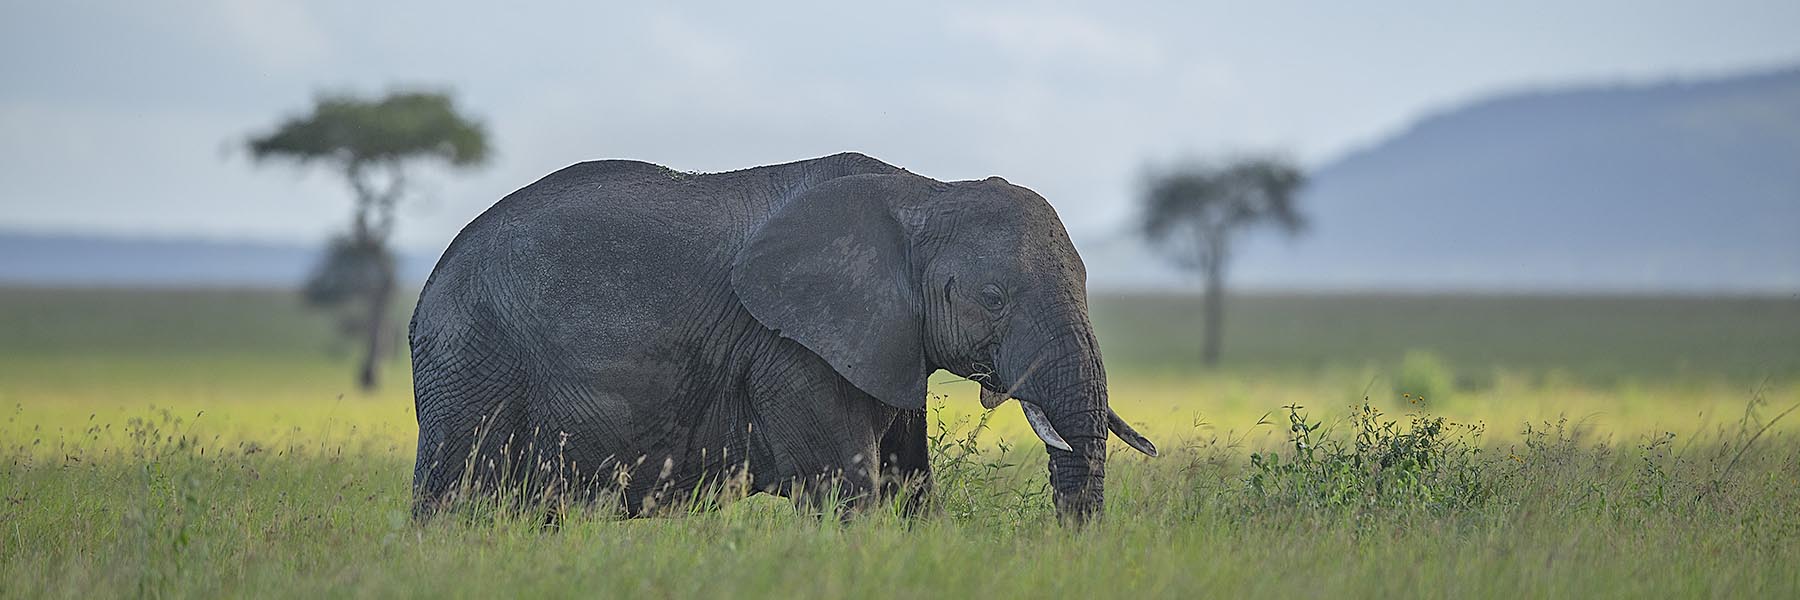 Tanzania wildlife experience